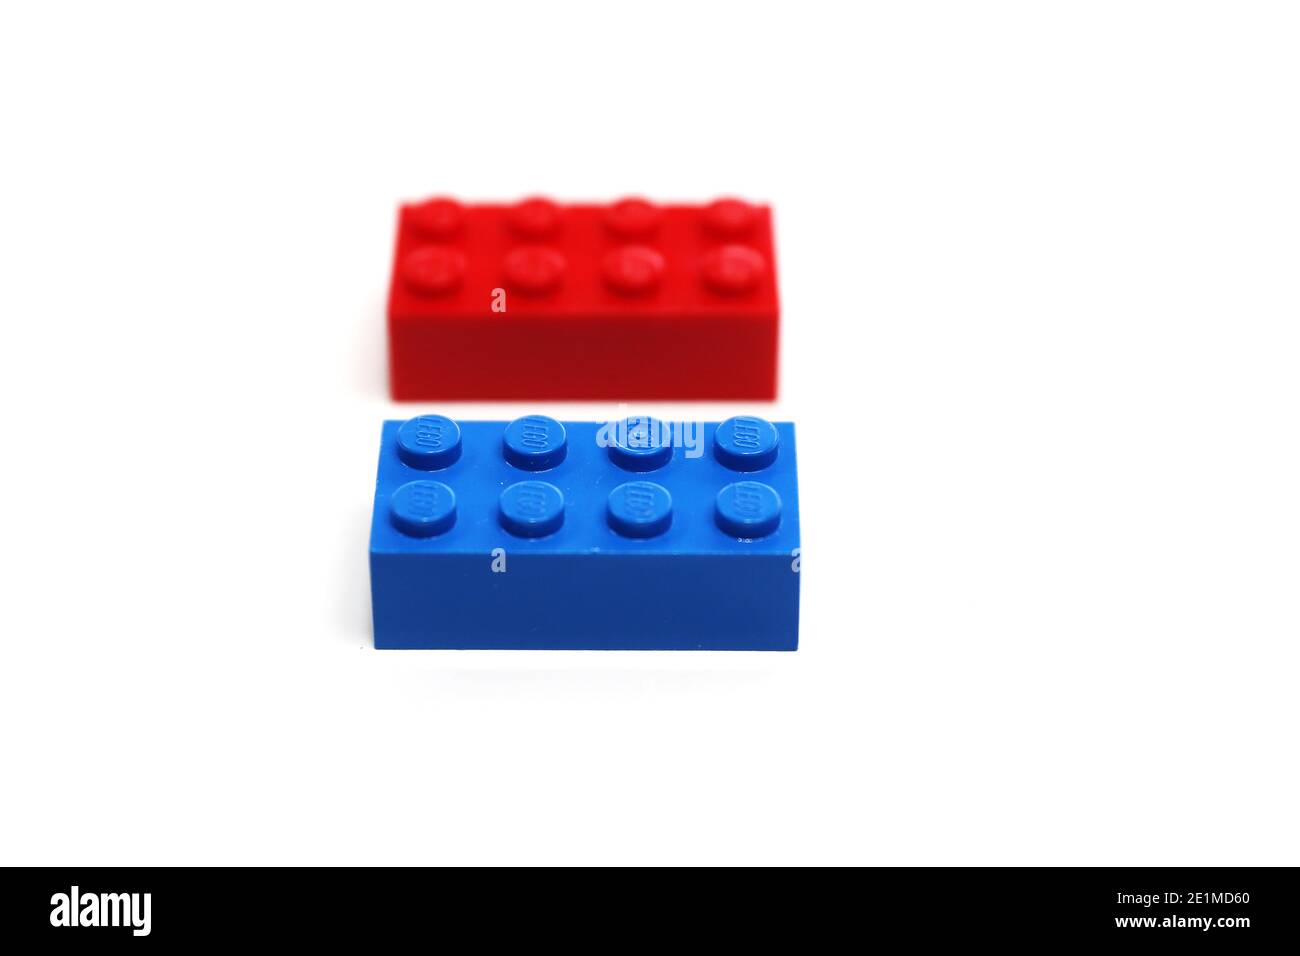 LEGO Bausteine Bild von Antony Thompson - tausend Wortmedien, KEINE VERKÄUFE, KEINE SYNDIZIERUNG. Kontakt für weitere Informationen Mob: 07775556610 Web: w Stockfoto